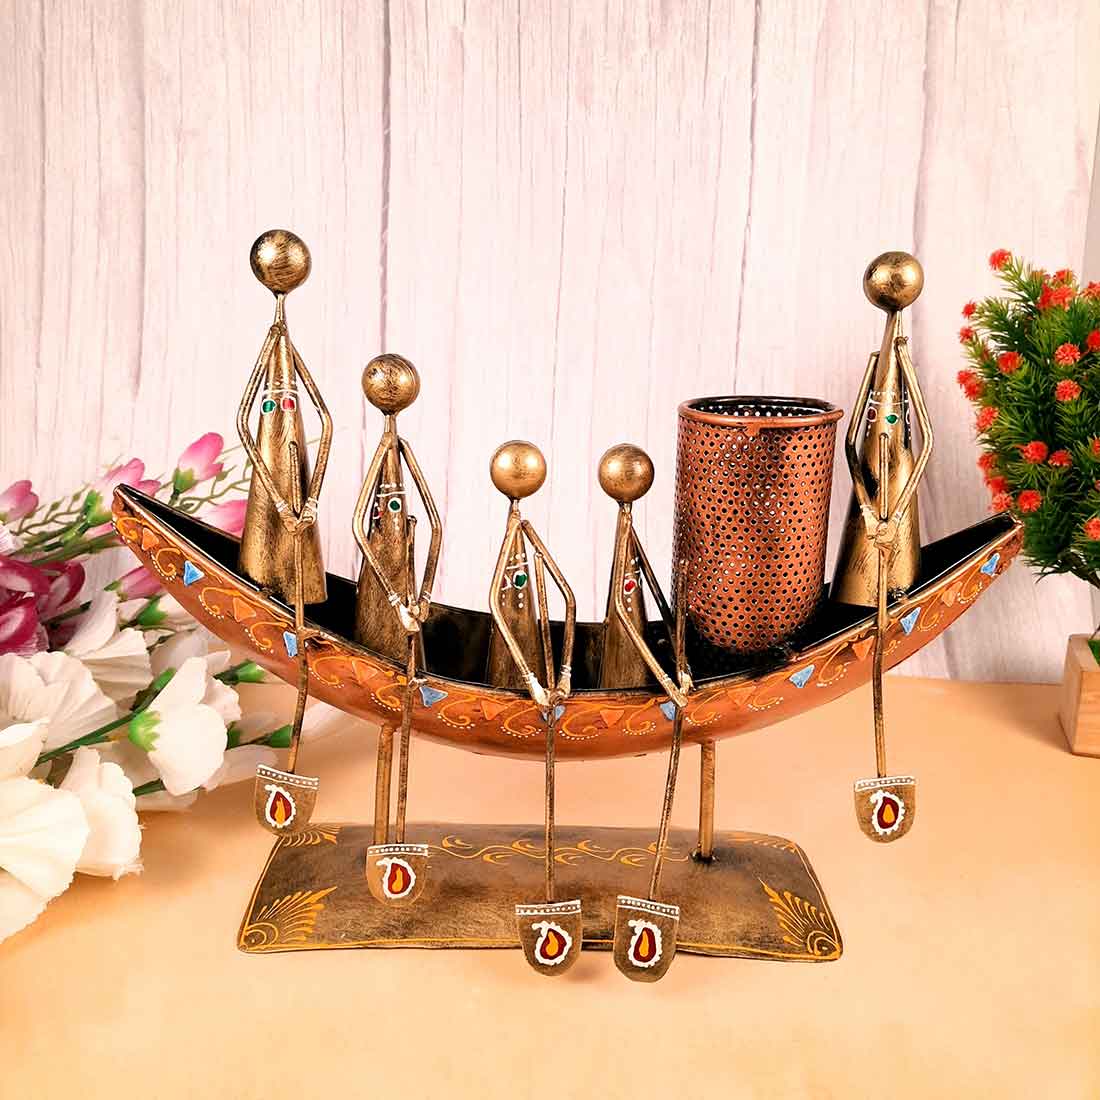 Showpiece Pen Holder | Desk Organizer - Boat Design - For Table Decor -15 Inch - ApkaMart#Color_Gold